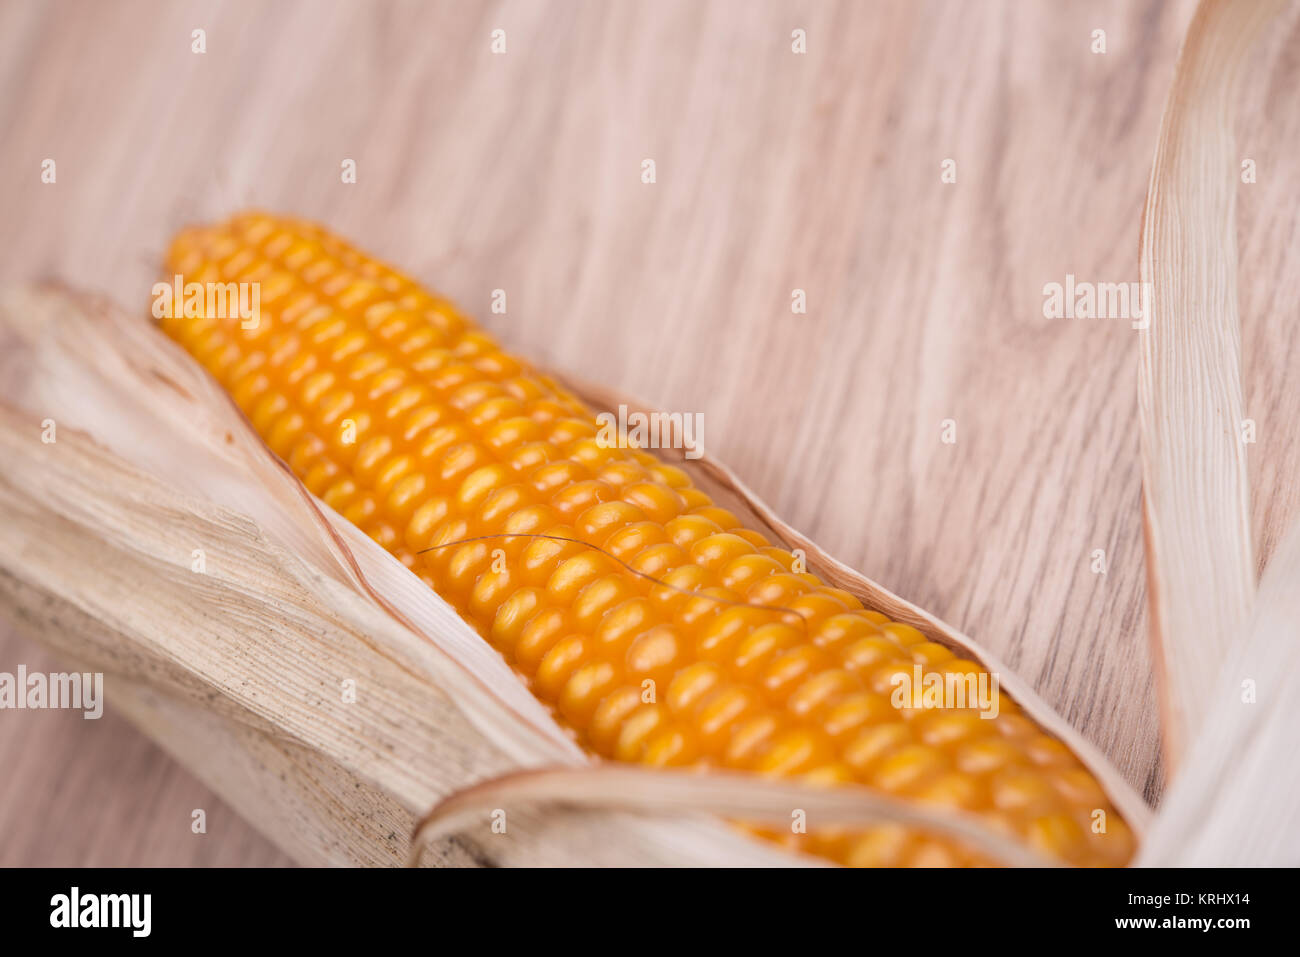 corncob on wooden ground Stock Photo